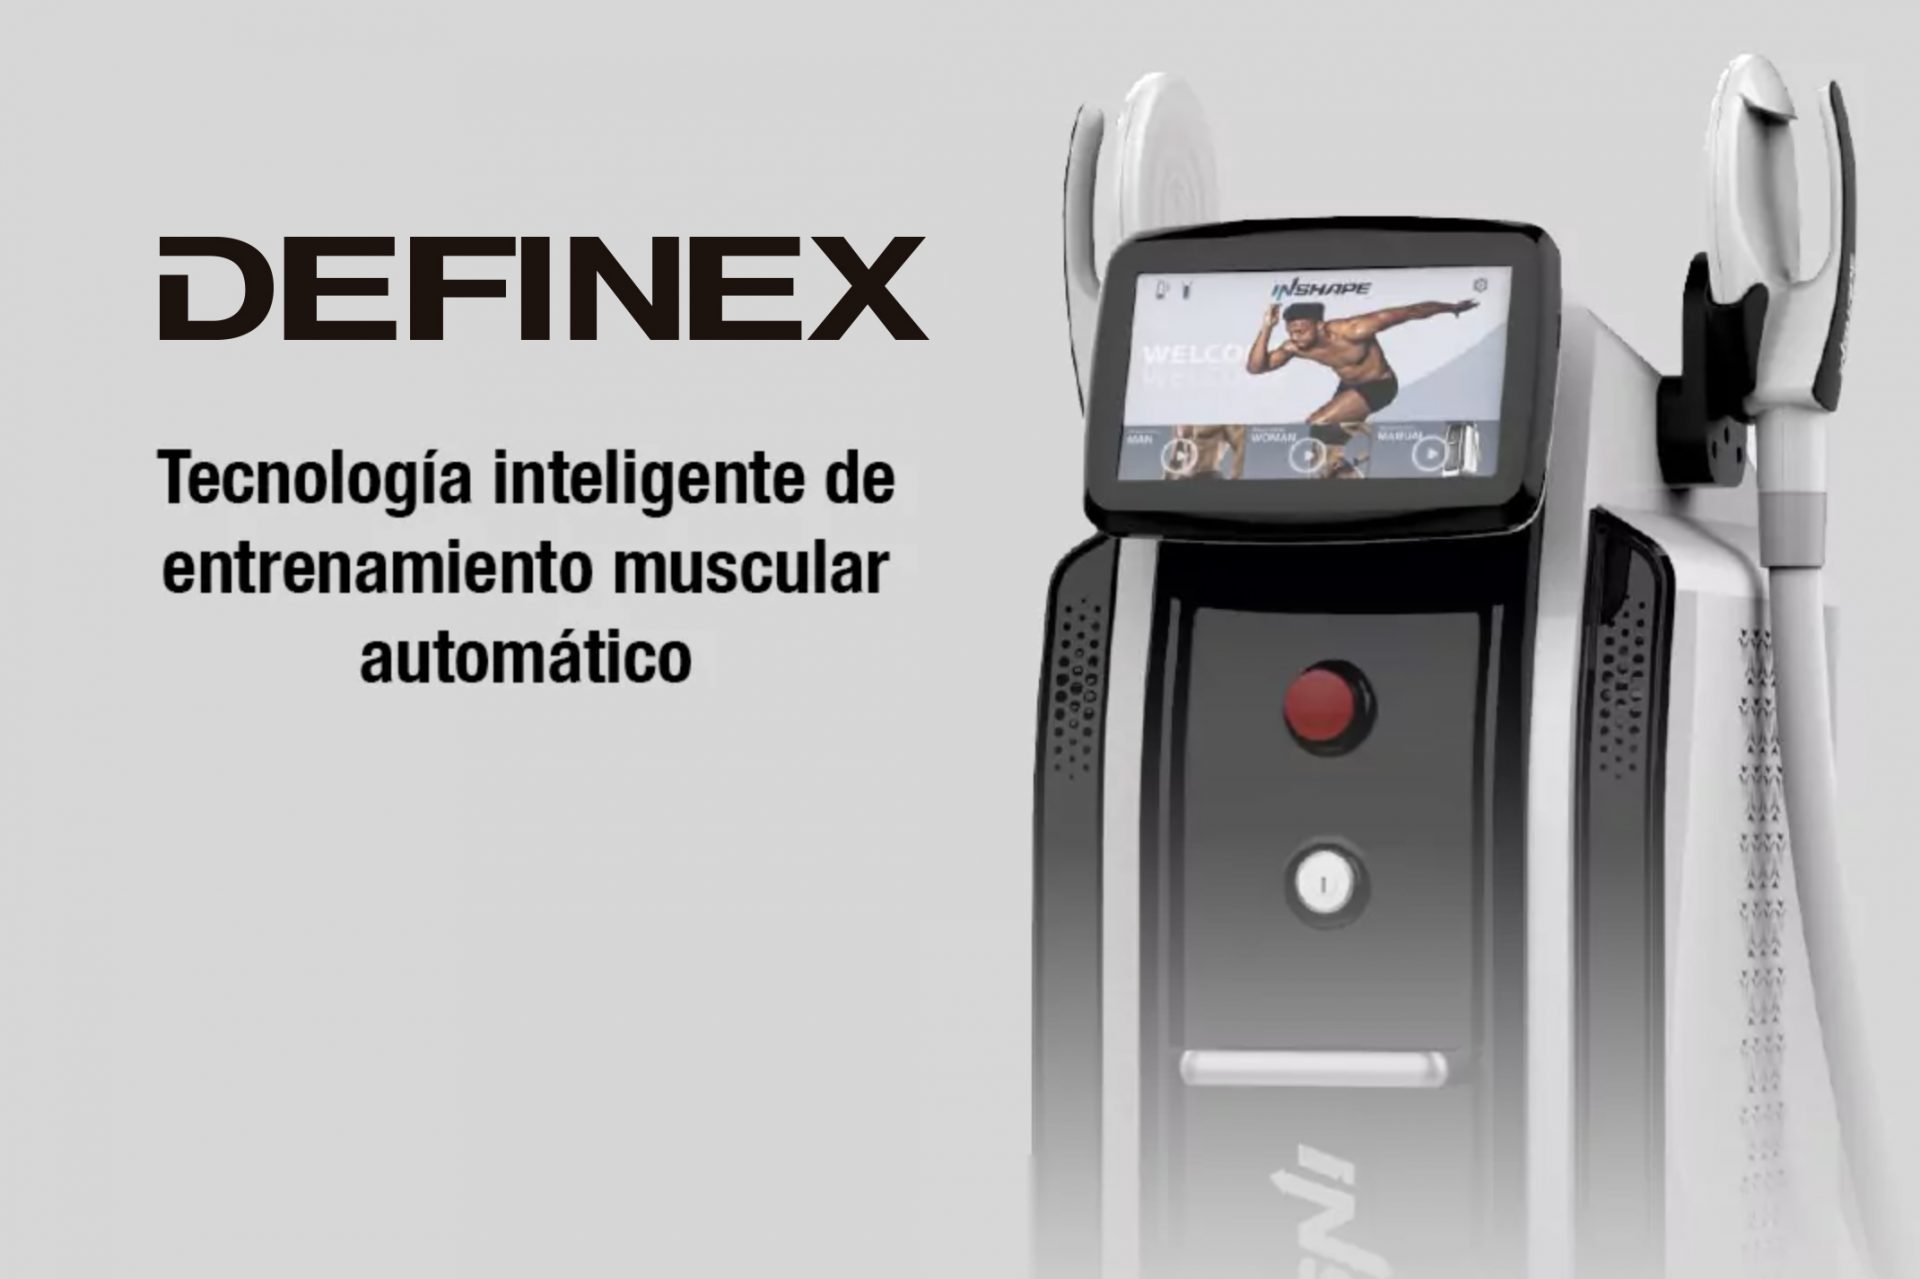 INSHAPE DEFINEX nueva generación de dispositivos para modelar el cuerpo. tecnología inteligente de entrenamiento muscular automático